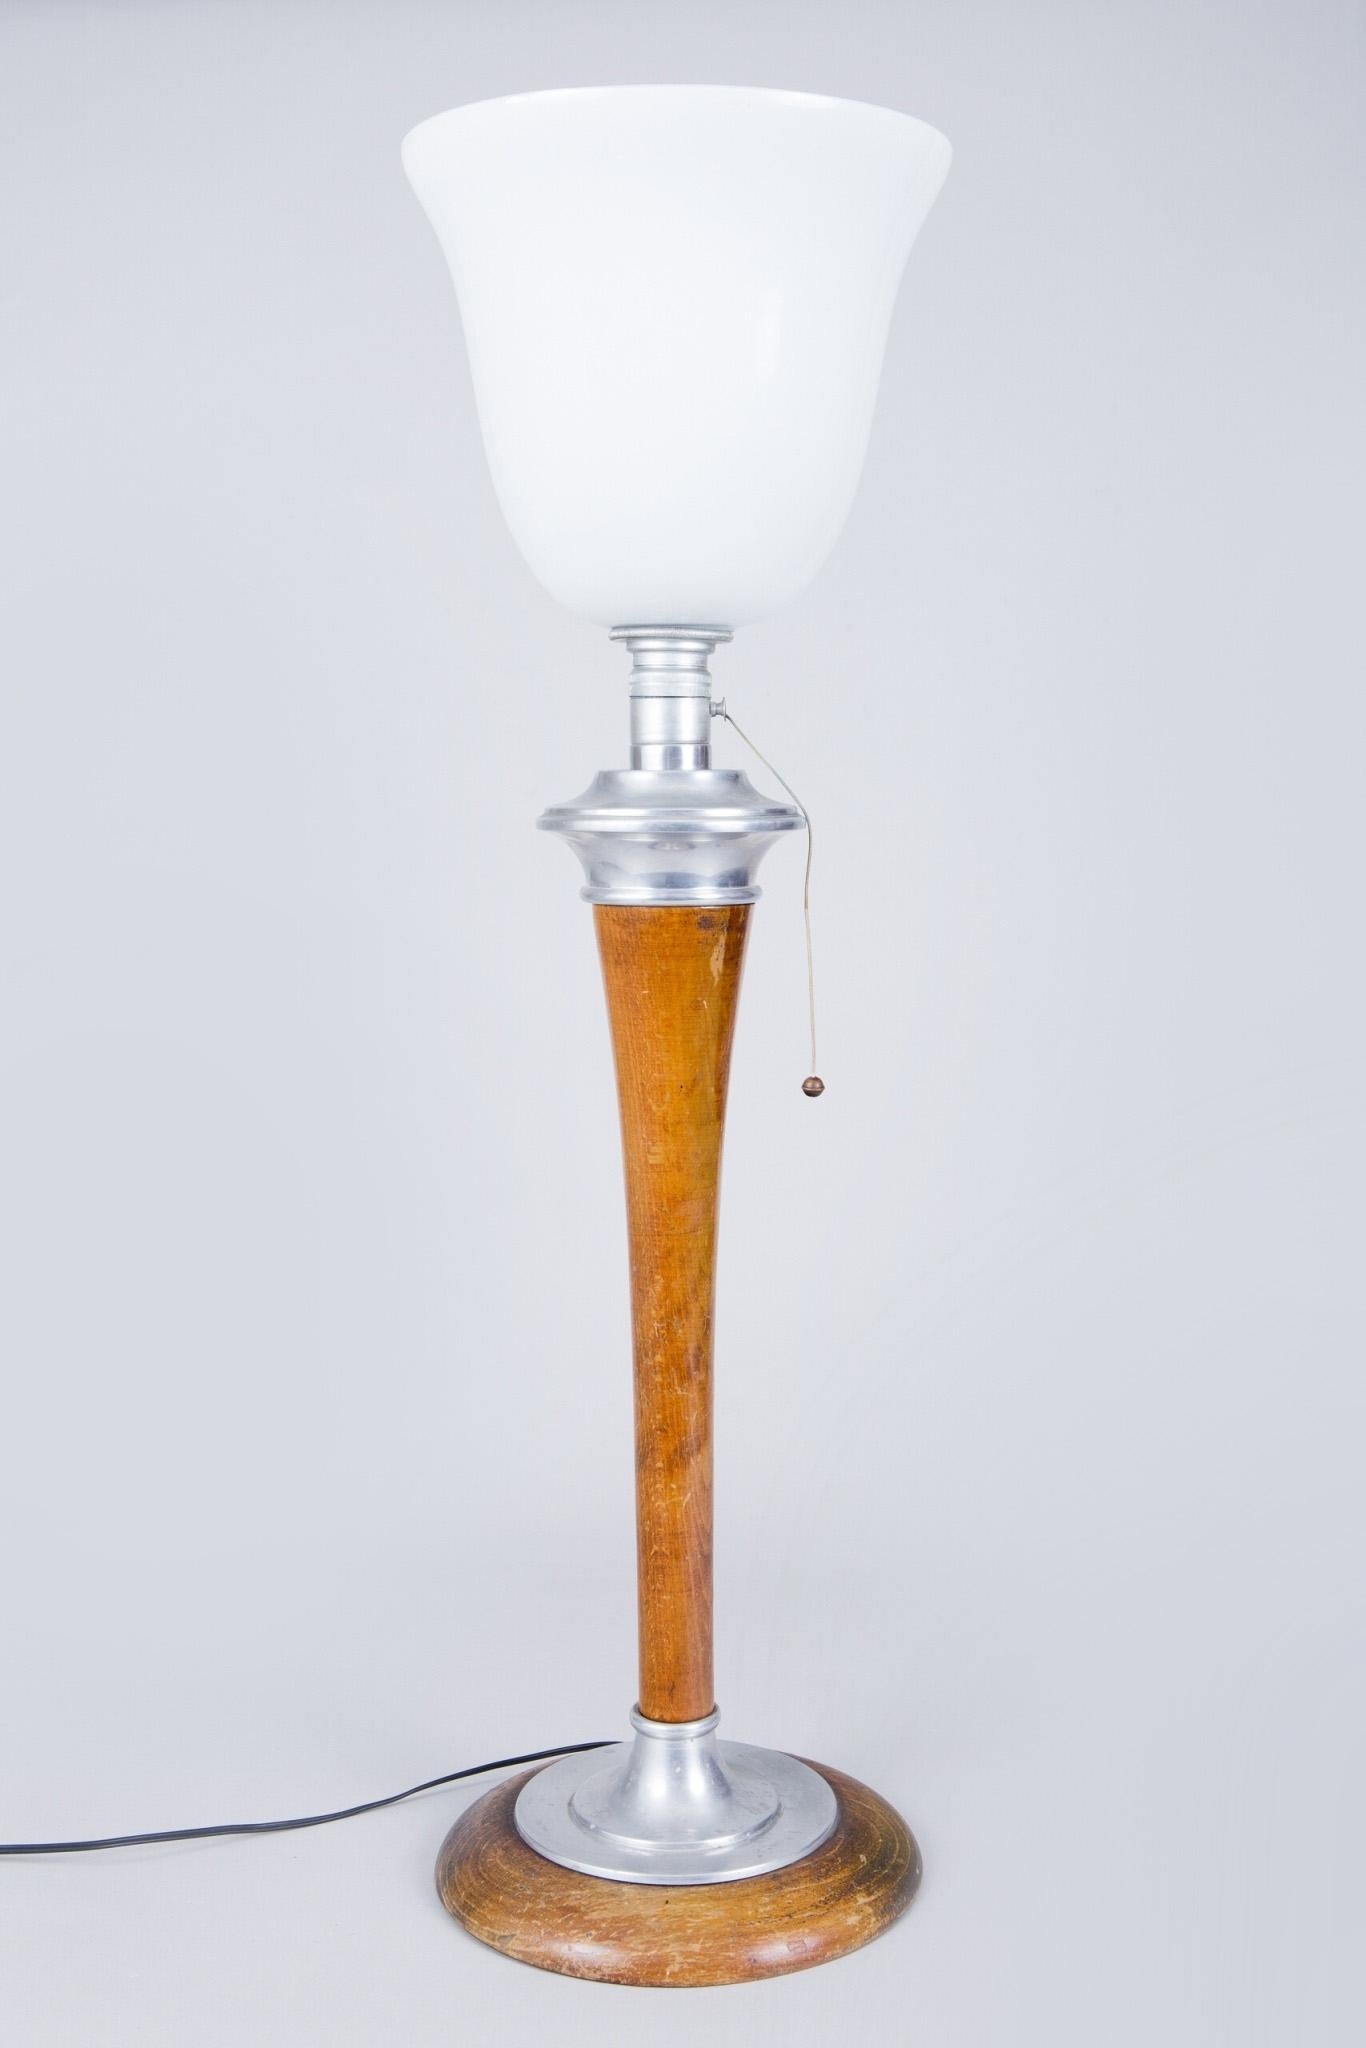 Französische Tischlampe
Hergestellt ca. 1920er Jahre 
Die Lampe ist in perfektem Originalzustand, es war keine Restaurierung nötig, nur eine moderne europäische Elektrifizierung.
Hergestellt aus Buche, Aluminium und Milchglas.